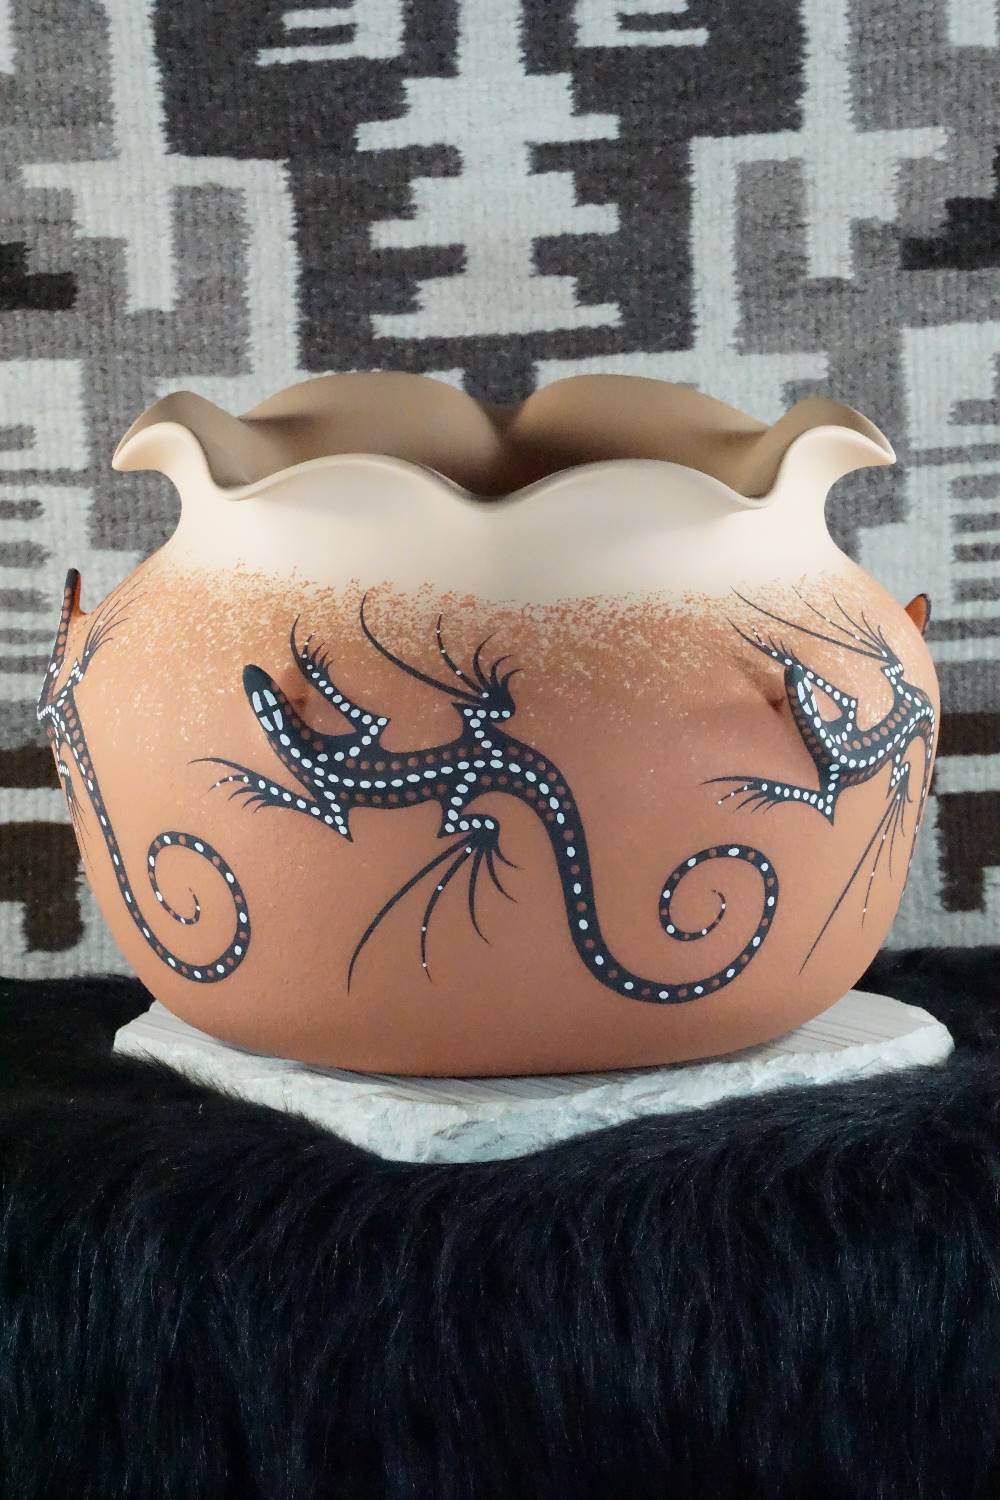 Zuni Pottery - Adam Cellicion